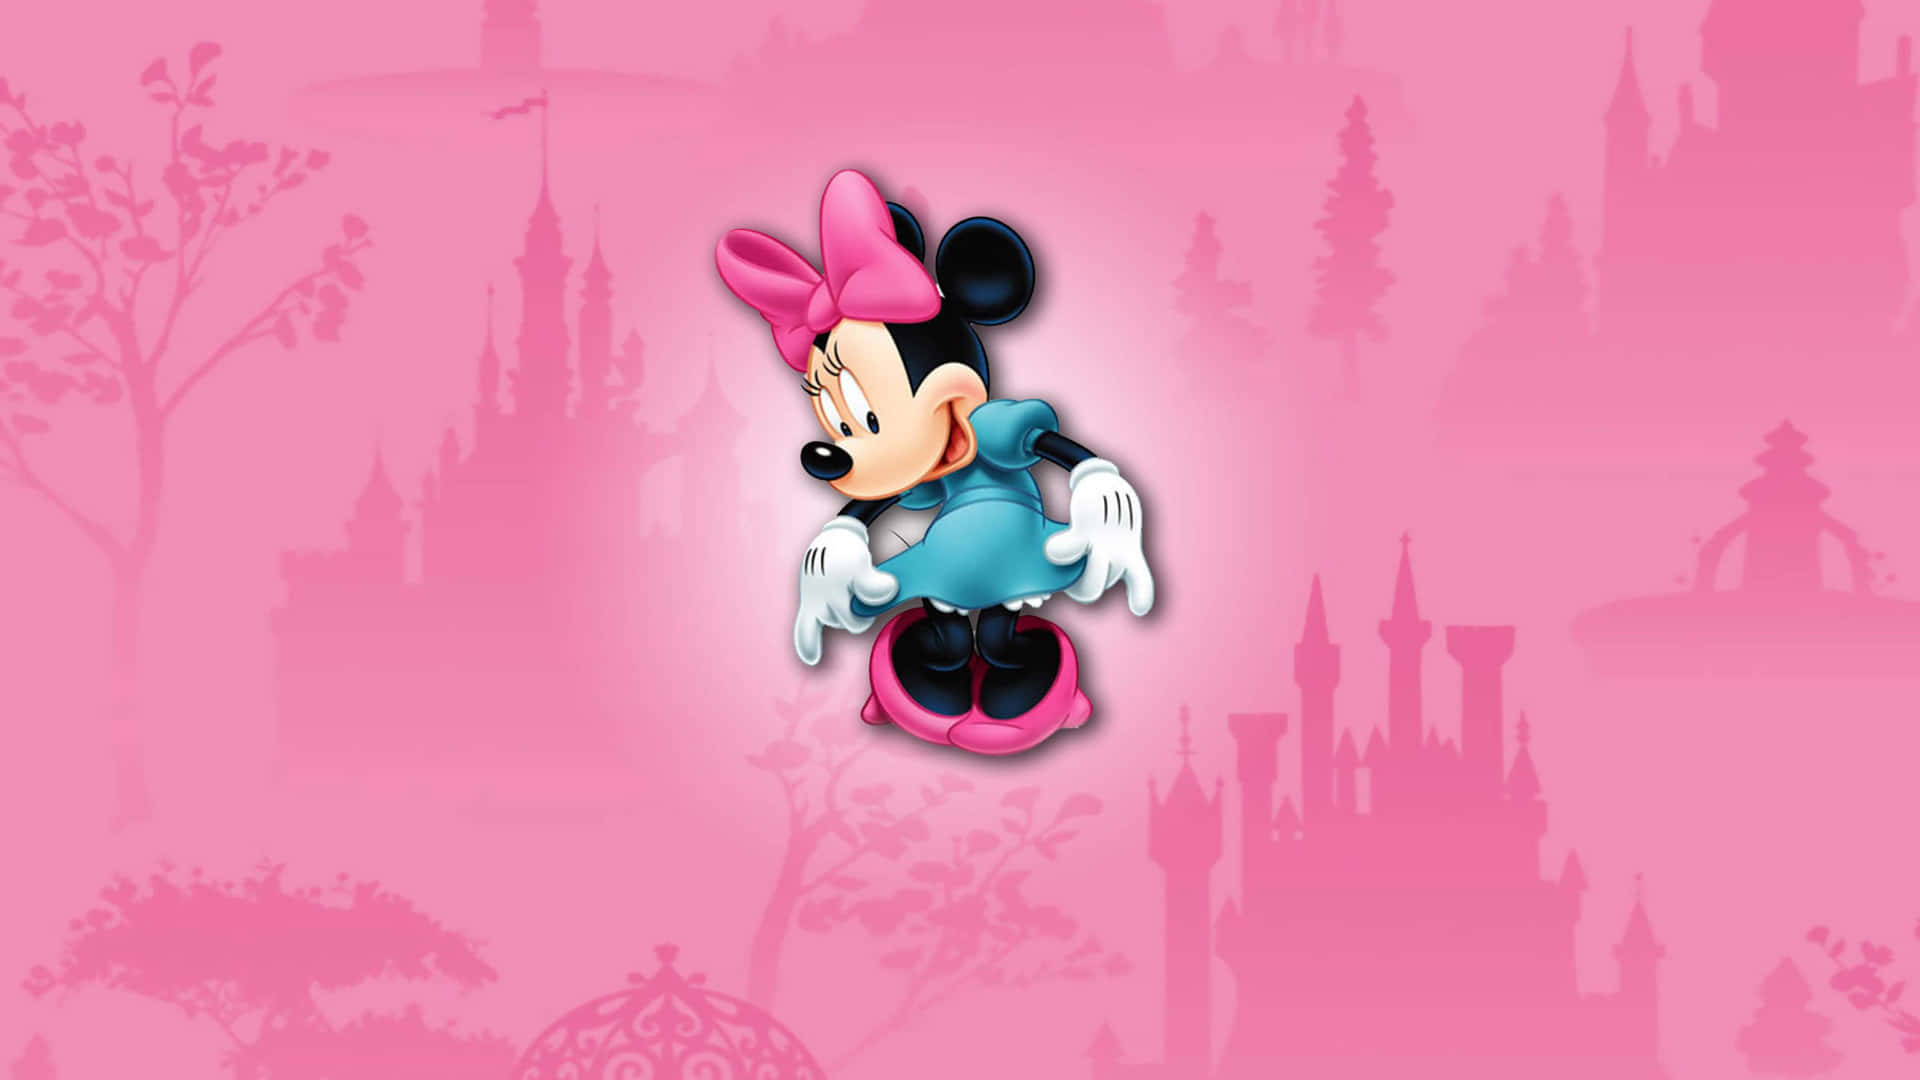 Denikoniska Minnie Mouse Klädd I En Mjuk Rosa Outfit. Wallpaper